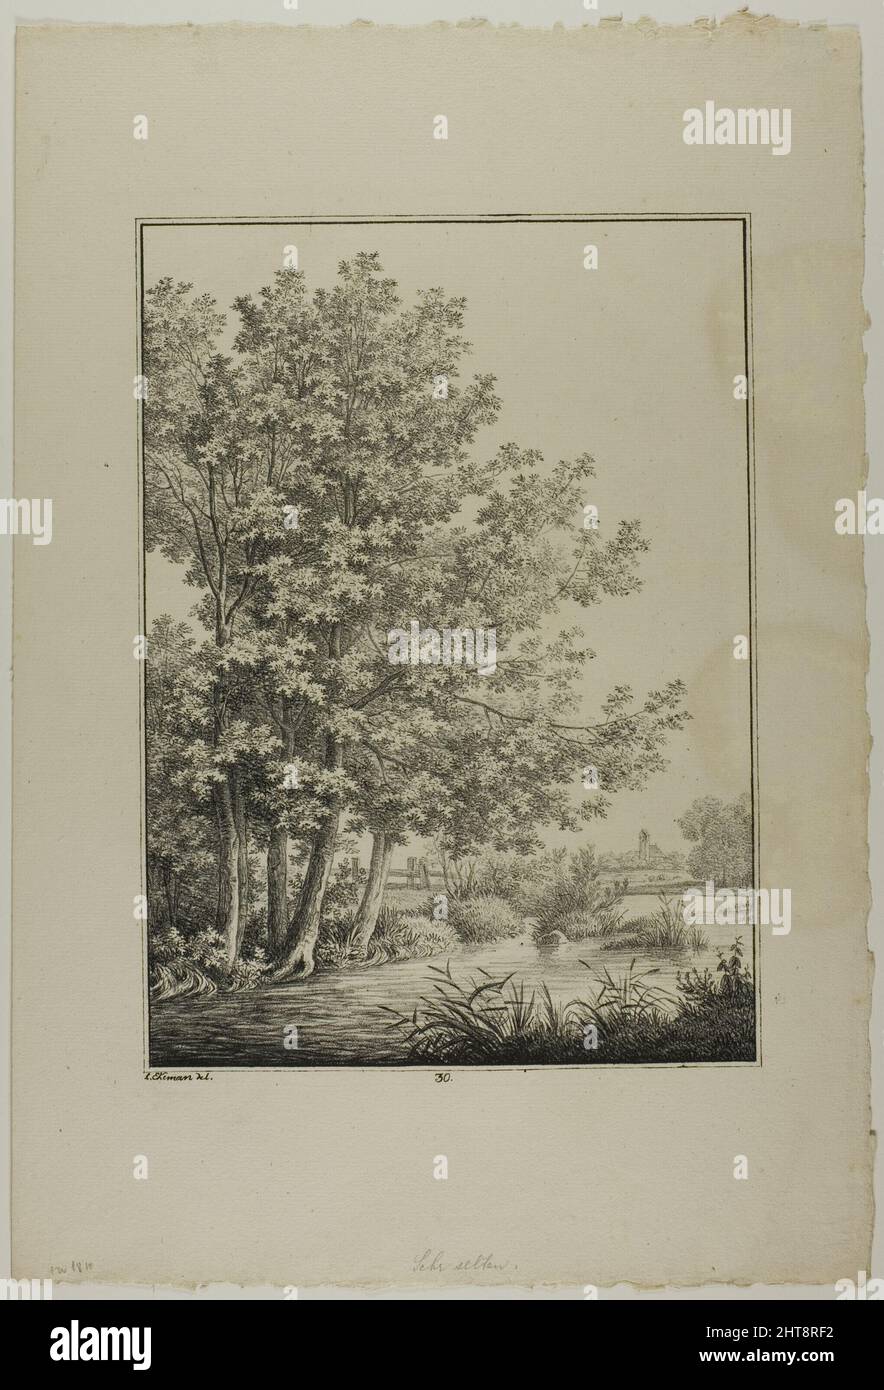 Plate 30 from Blatt Baum und Landschafts Studien, c.1810. Stock Photo